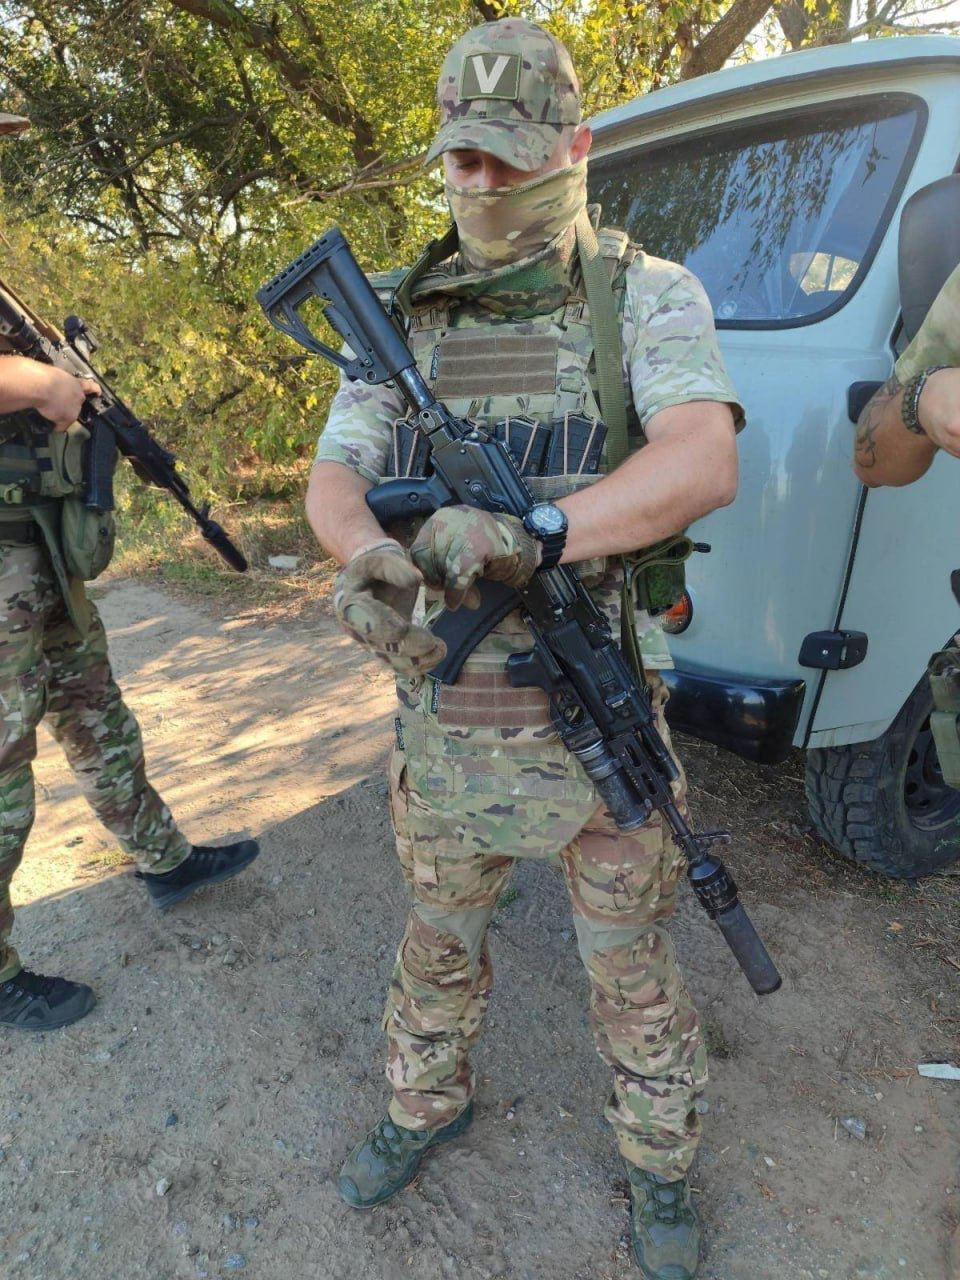 ''Zadanie należy do ciebie, rób co chcesz'': dowódcy zmusili rosyjskich marines do przeprawy przez Dniepr bez łodzi, utonęli. Audio